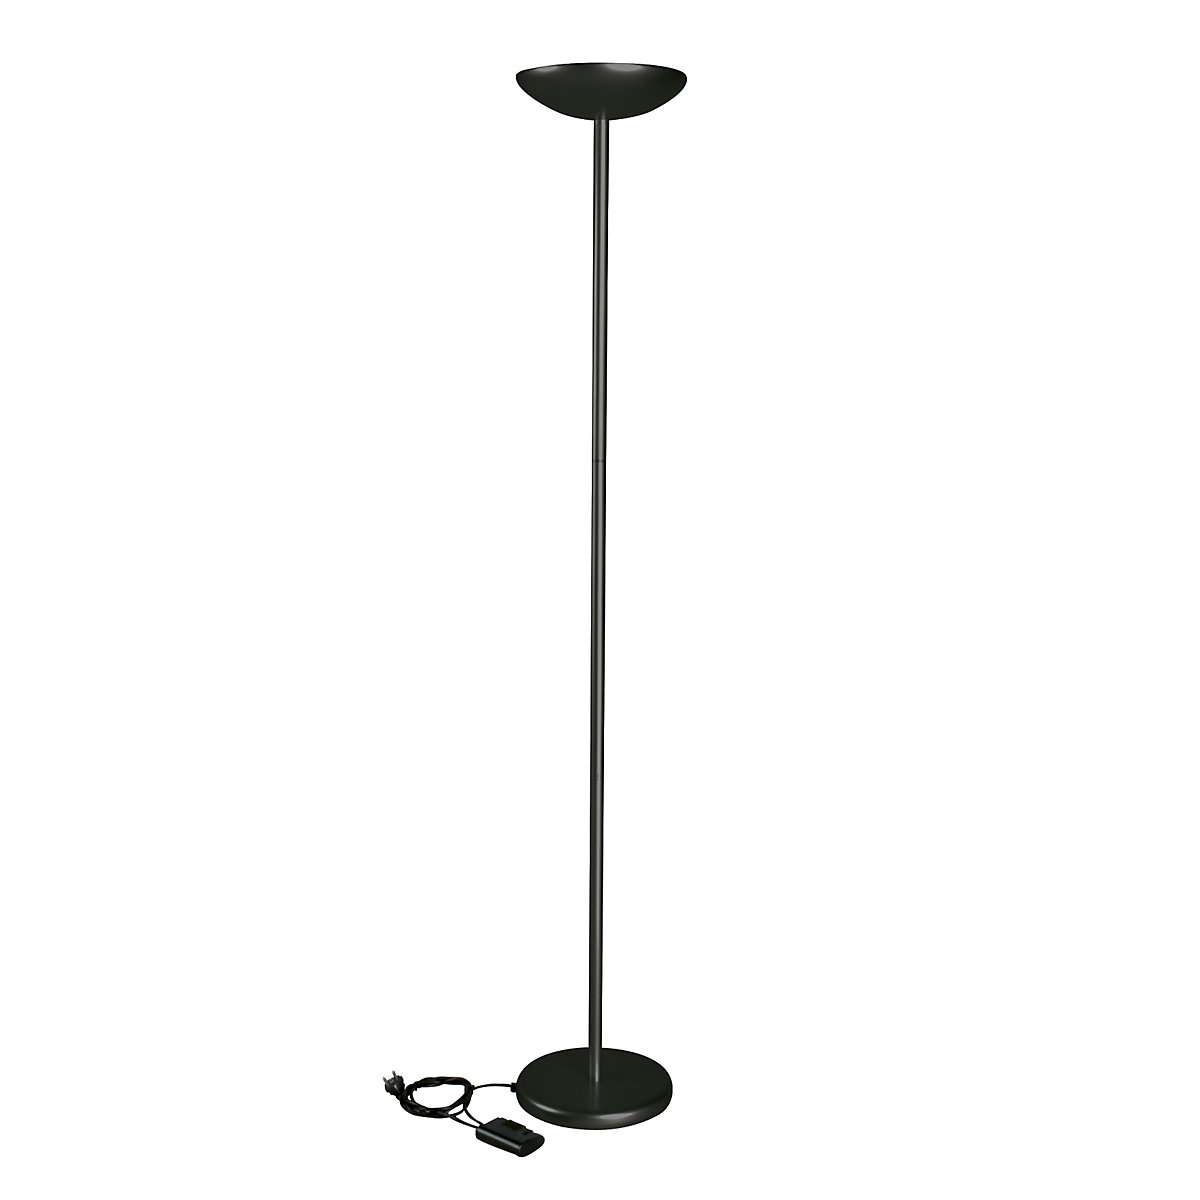 Halogenowa lampa stojąca oświetlająca sufit – MAUL, 120 W, z regulacją oświetlenia, czarna-2